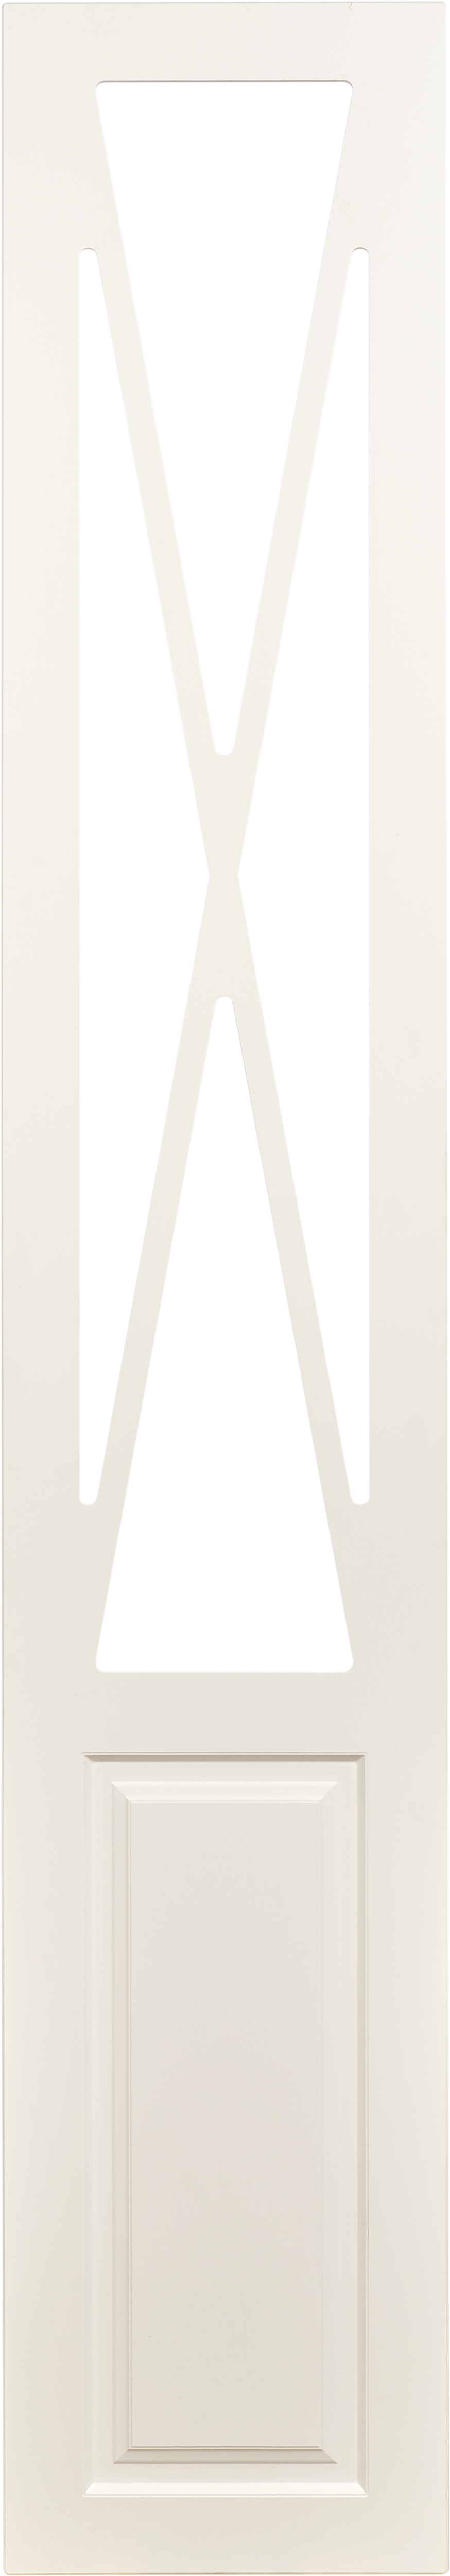 Puerta abatible para armario manila blanco 40x200x1,9 cm